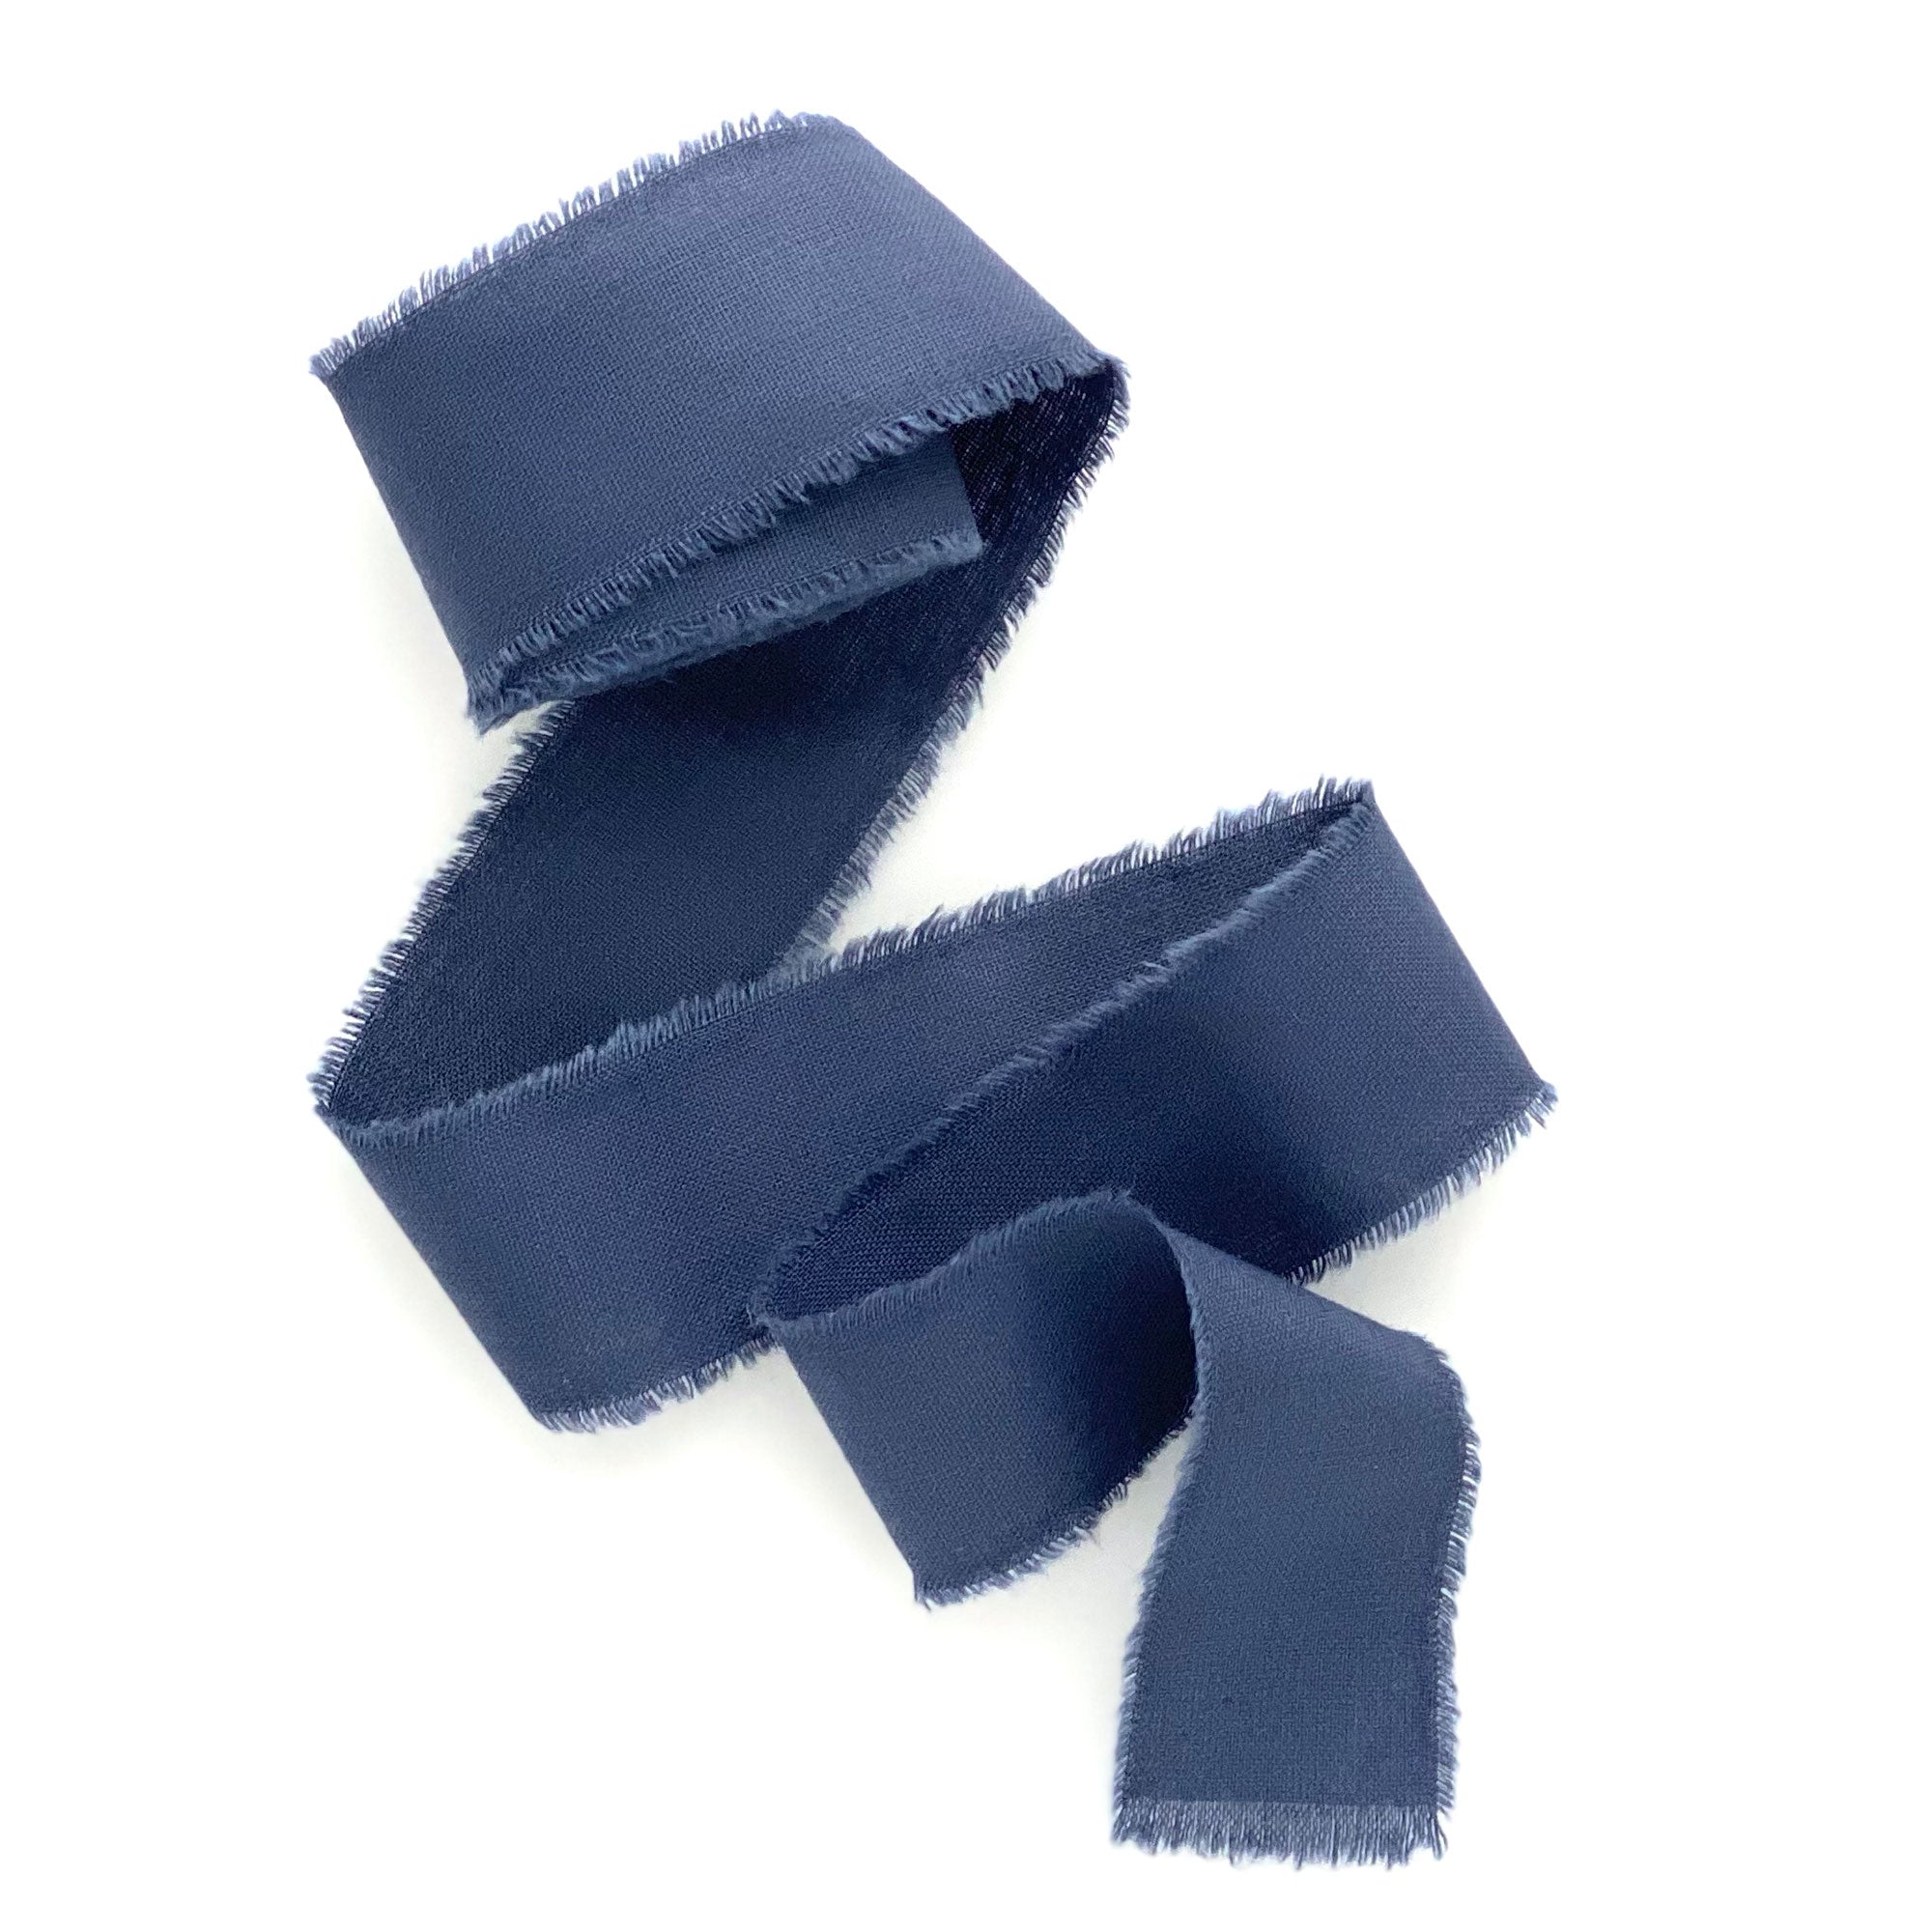 Dusty Blue Frayed Silk Ribbon 2 Wide BY THE YARD 